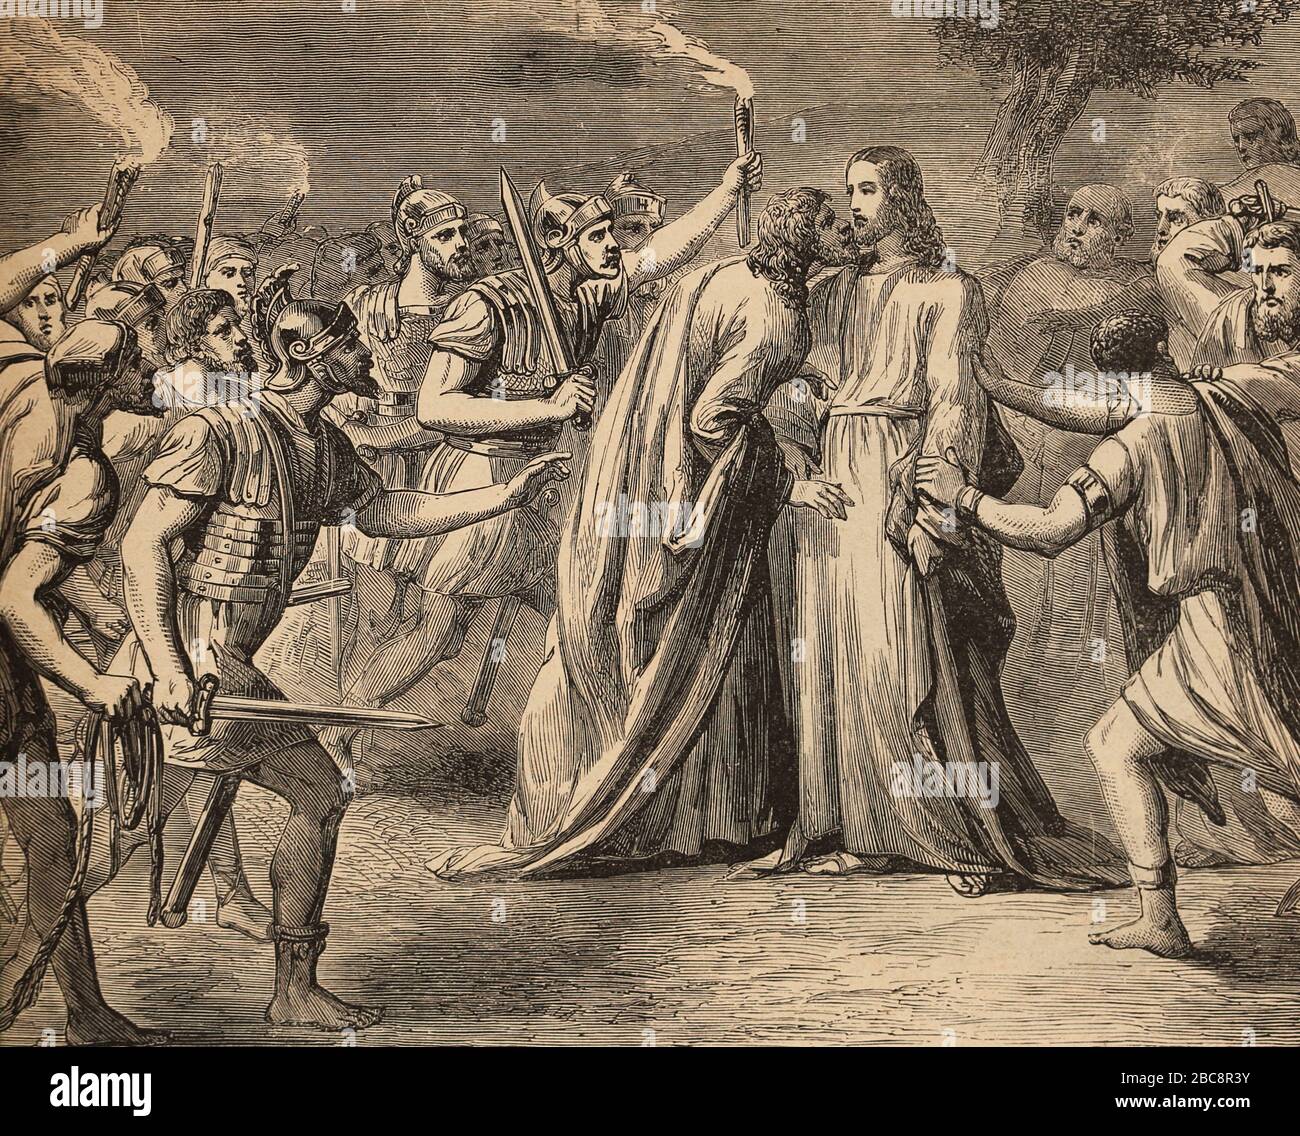 L'arrestation de Jésus dans le jardin de Gethsémané. Baiser de Judas. Gravure. Sainte Bible, XIXe siècle. Banque D'Images